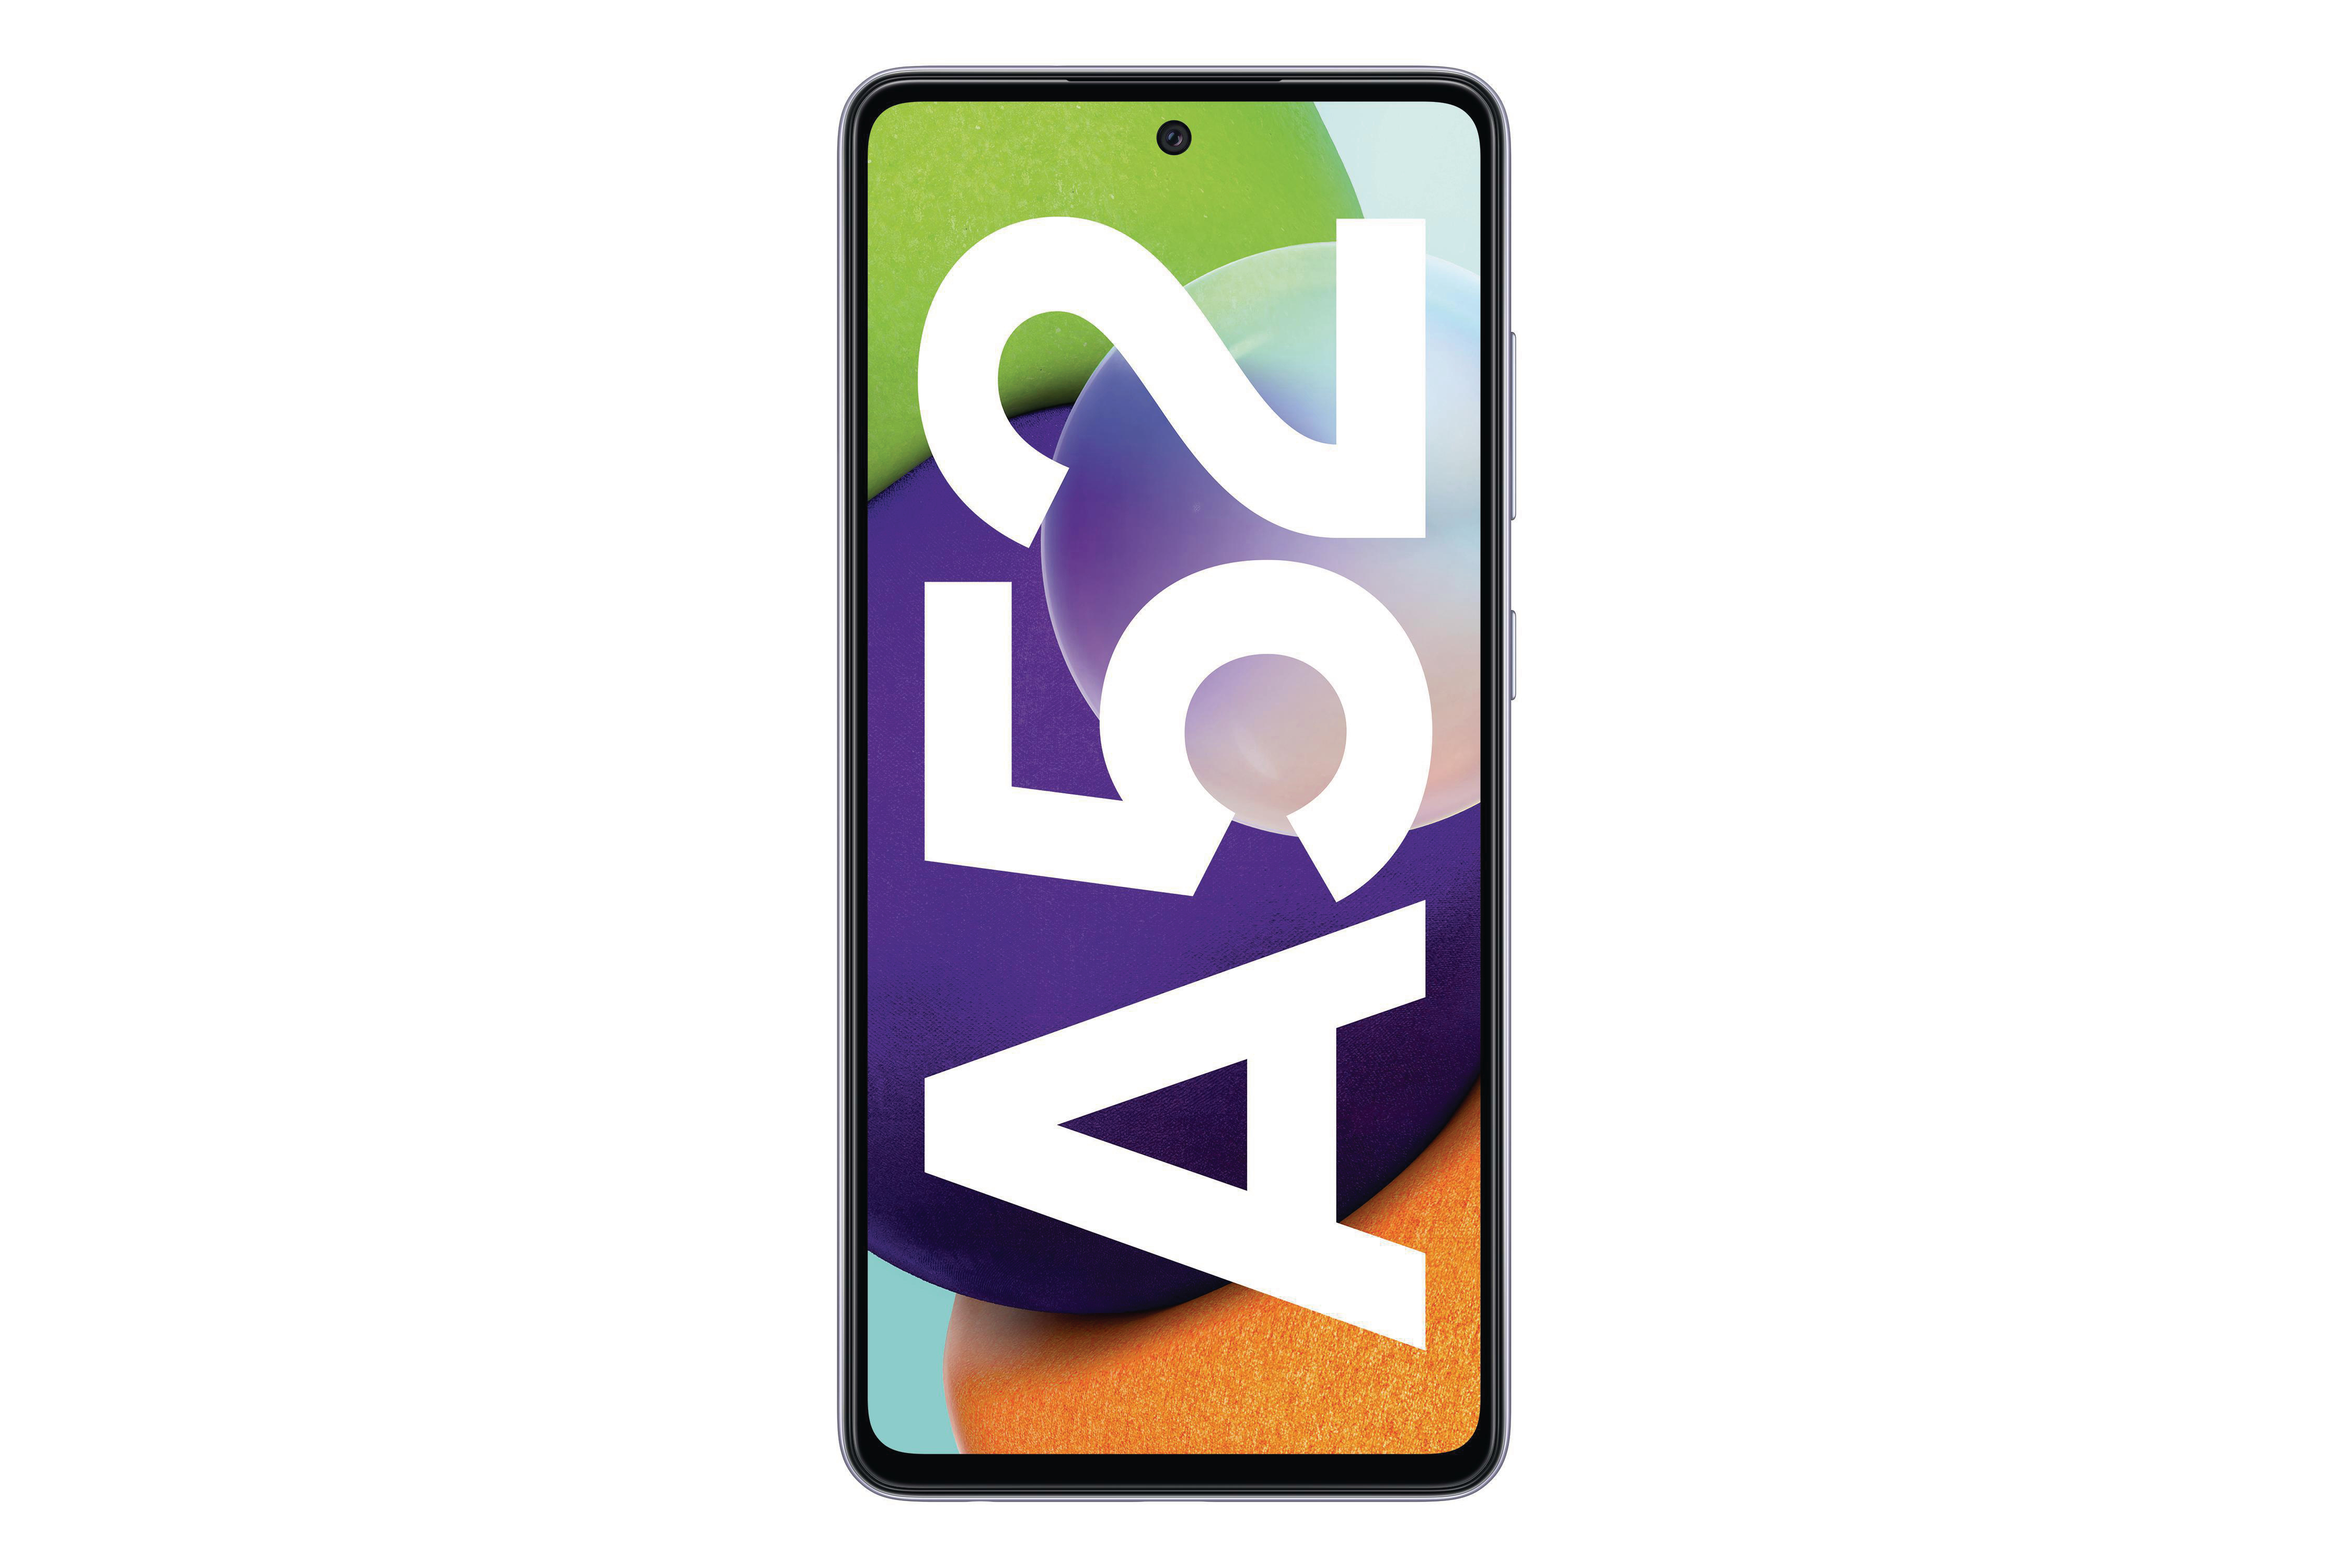 SAMSUNG GB SIM A52 128 Galaxy Dual Violet Awesome